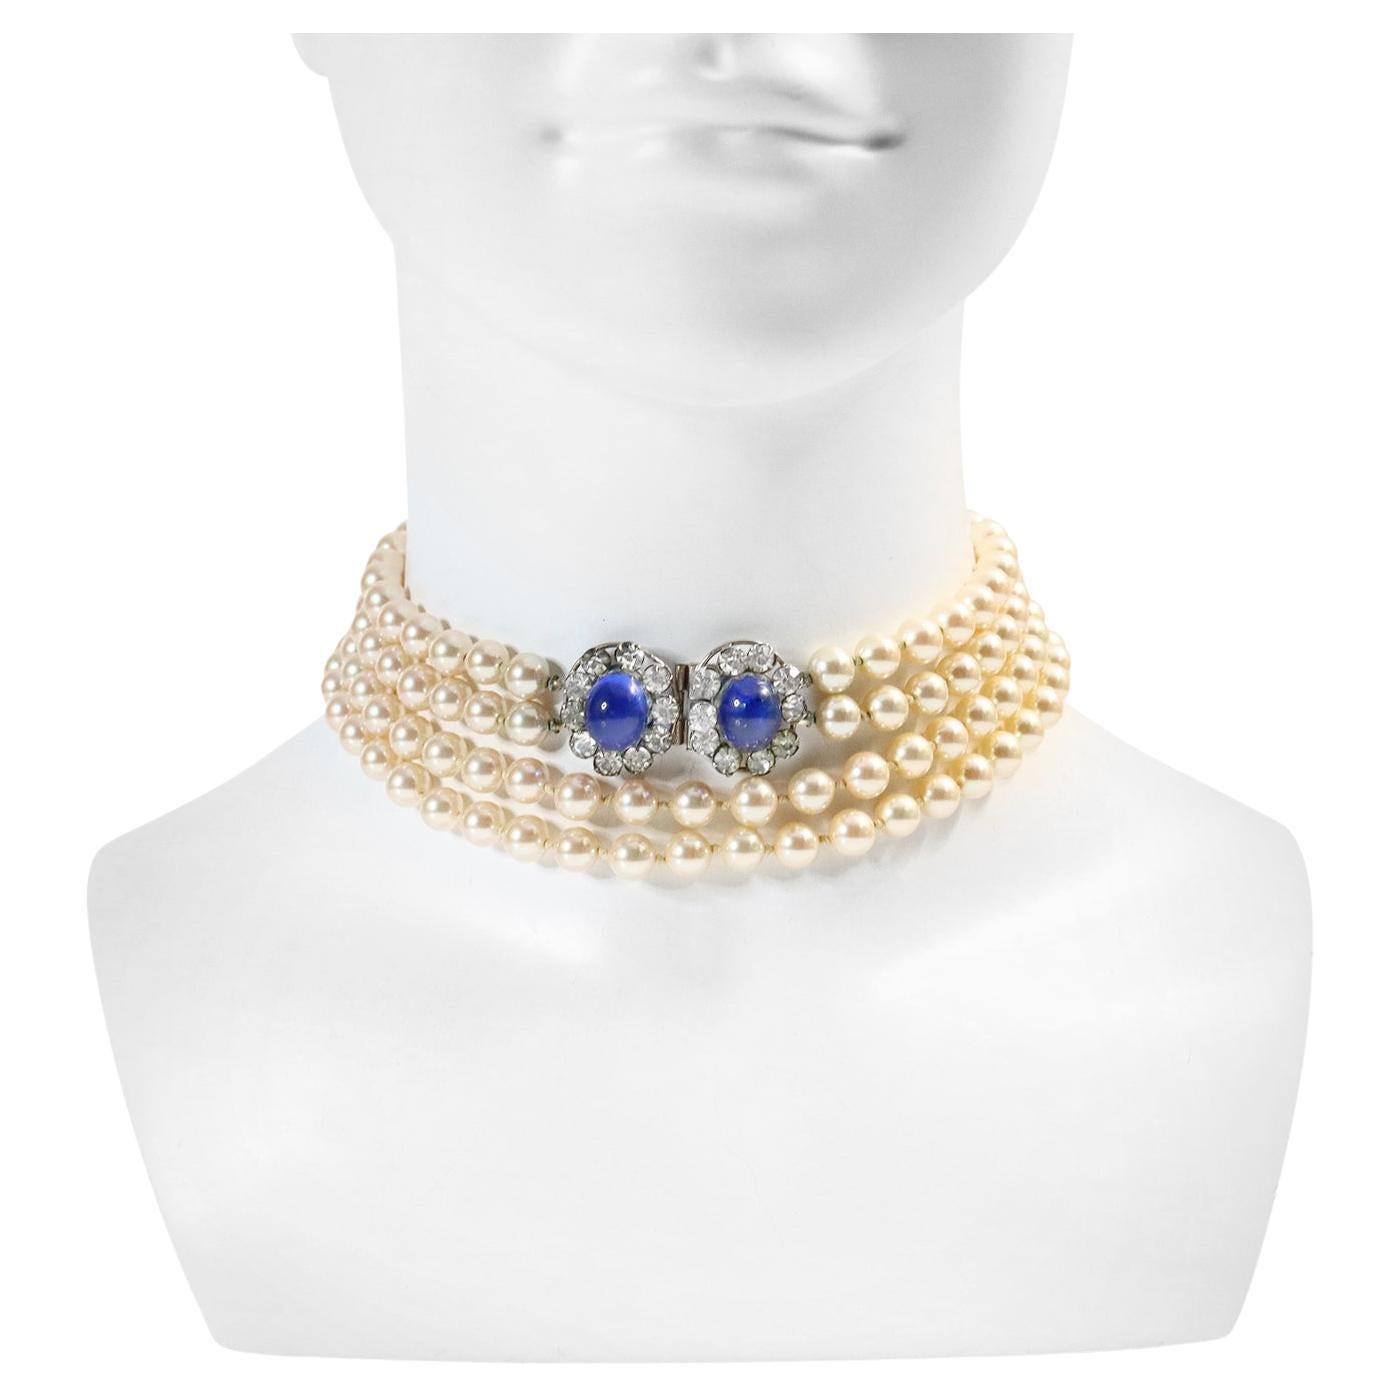 Vintage French Diamante Faux Double Pearl Long Necklace.  Blaue Cabochons, umgeben von Kristallen, bilden die beiden Verschlüsse, die durch zwei lange Reihen von schweren, doppelt geknoteten Kunstperlen verbunden sind.  Sie sind 29